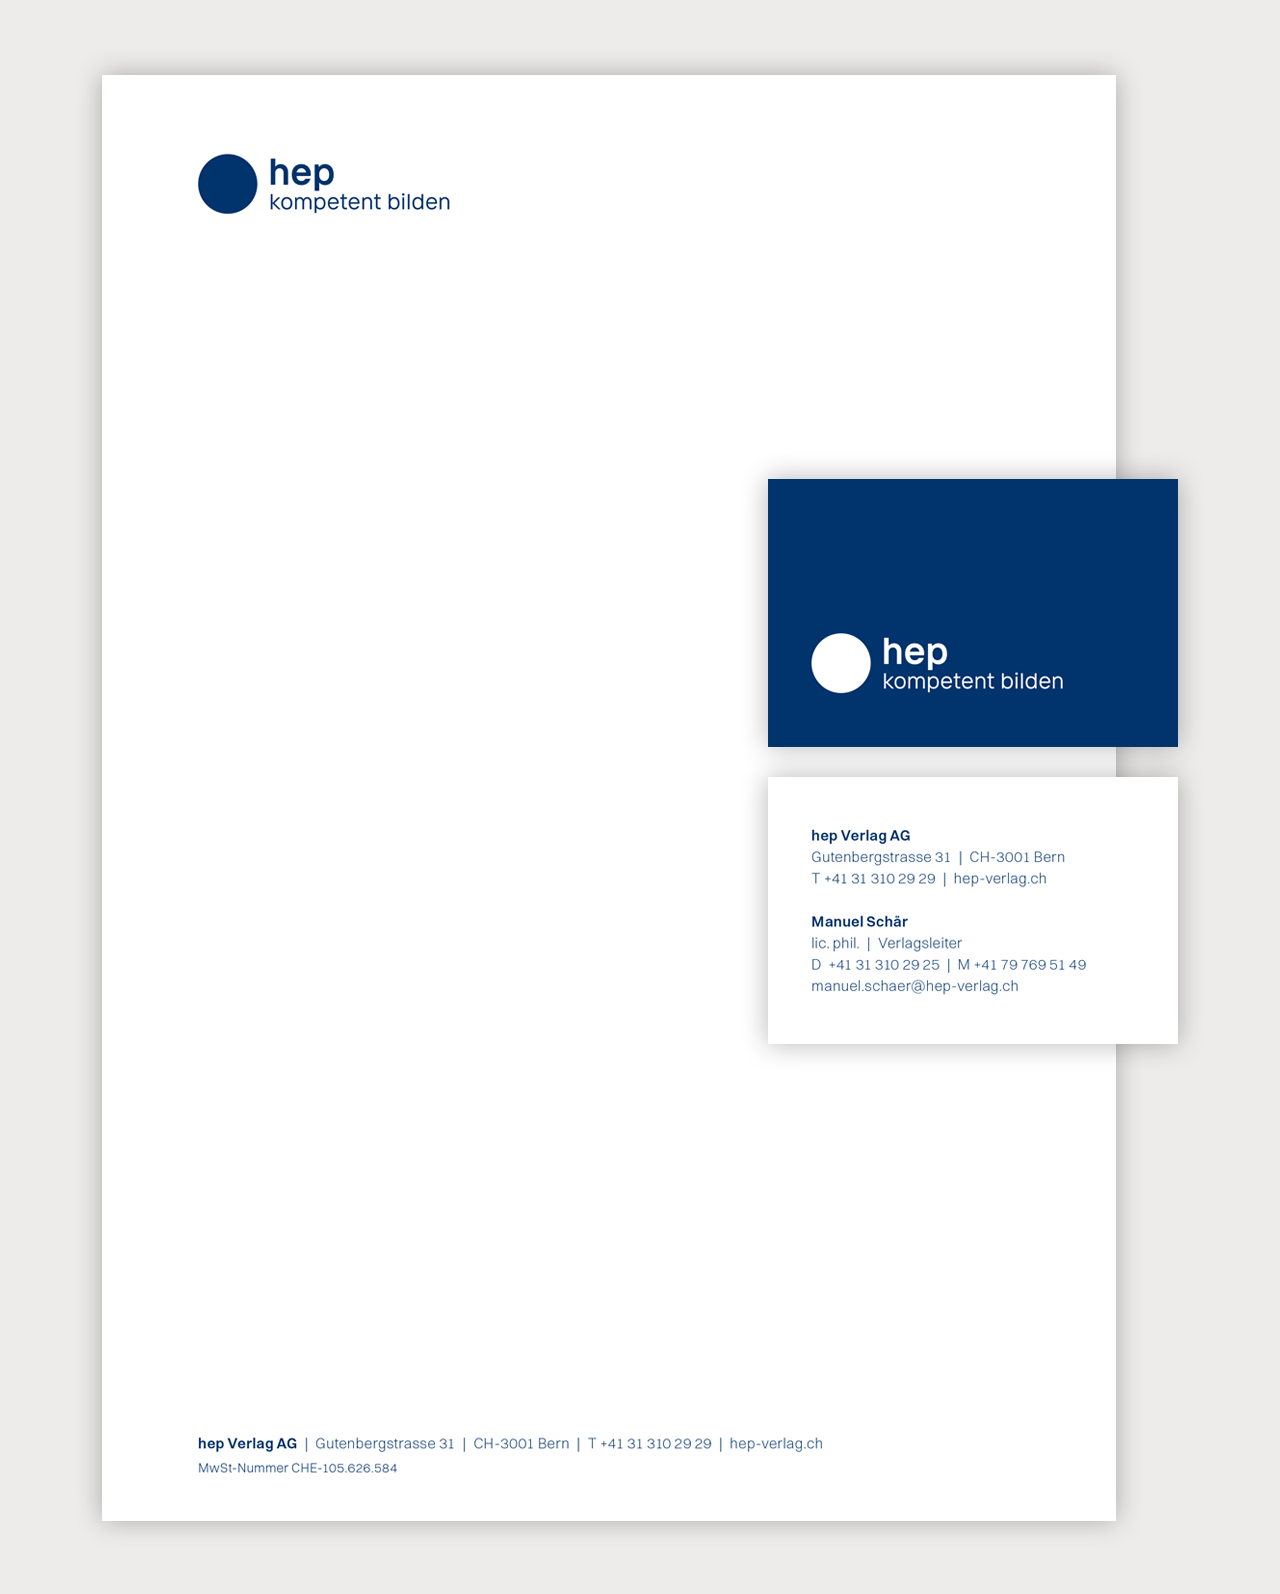 Redesign von Firmenauftritt / Corporate Design für den hep Verlag